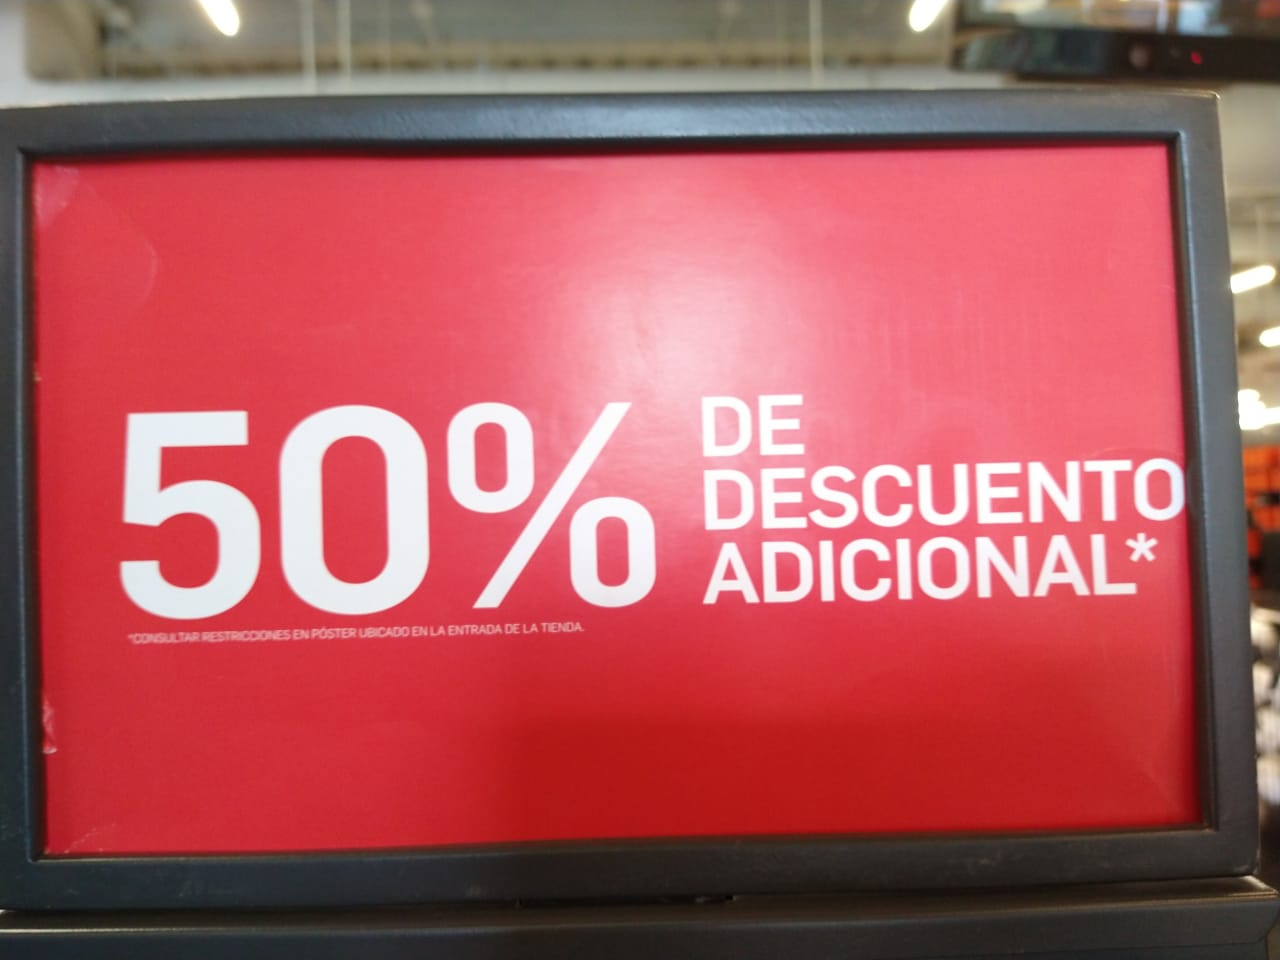 Nike Factory (Aeropuerto) - 50% de descuento en toda la tienda comprando en  par - promodescuentos.com